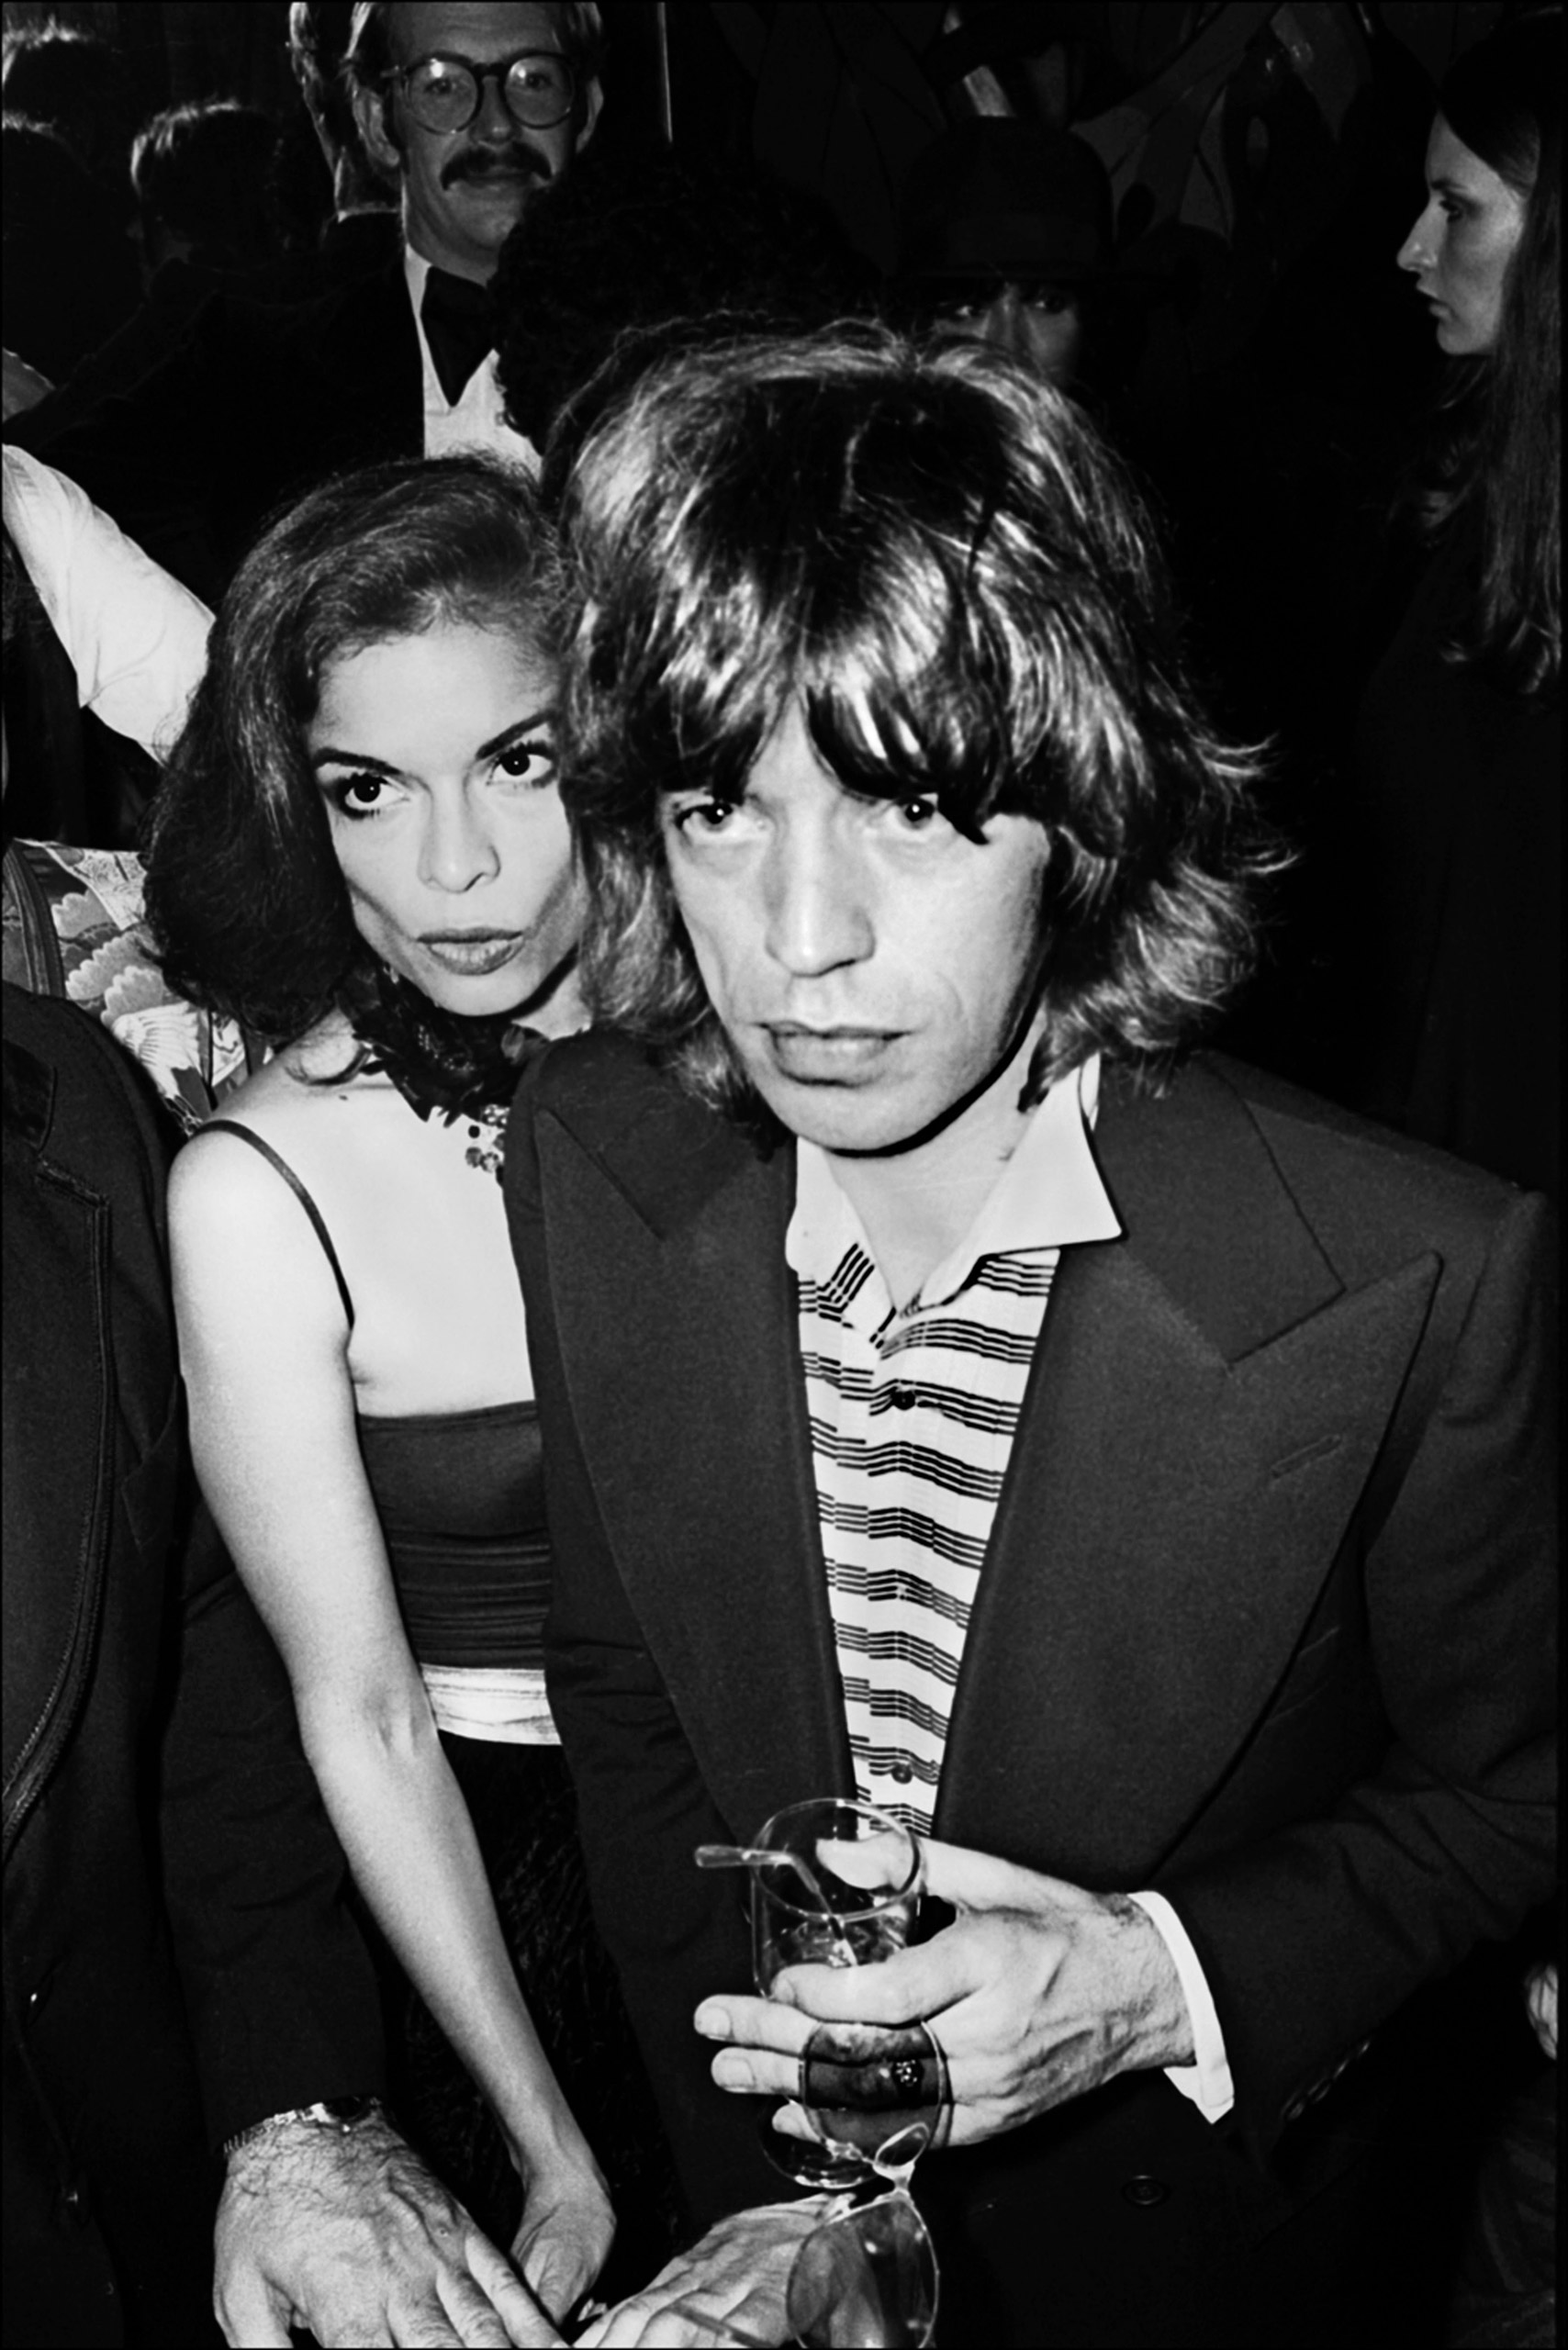 Mick Jagger and Bianca Jagger at the Copacabana New York City 1976